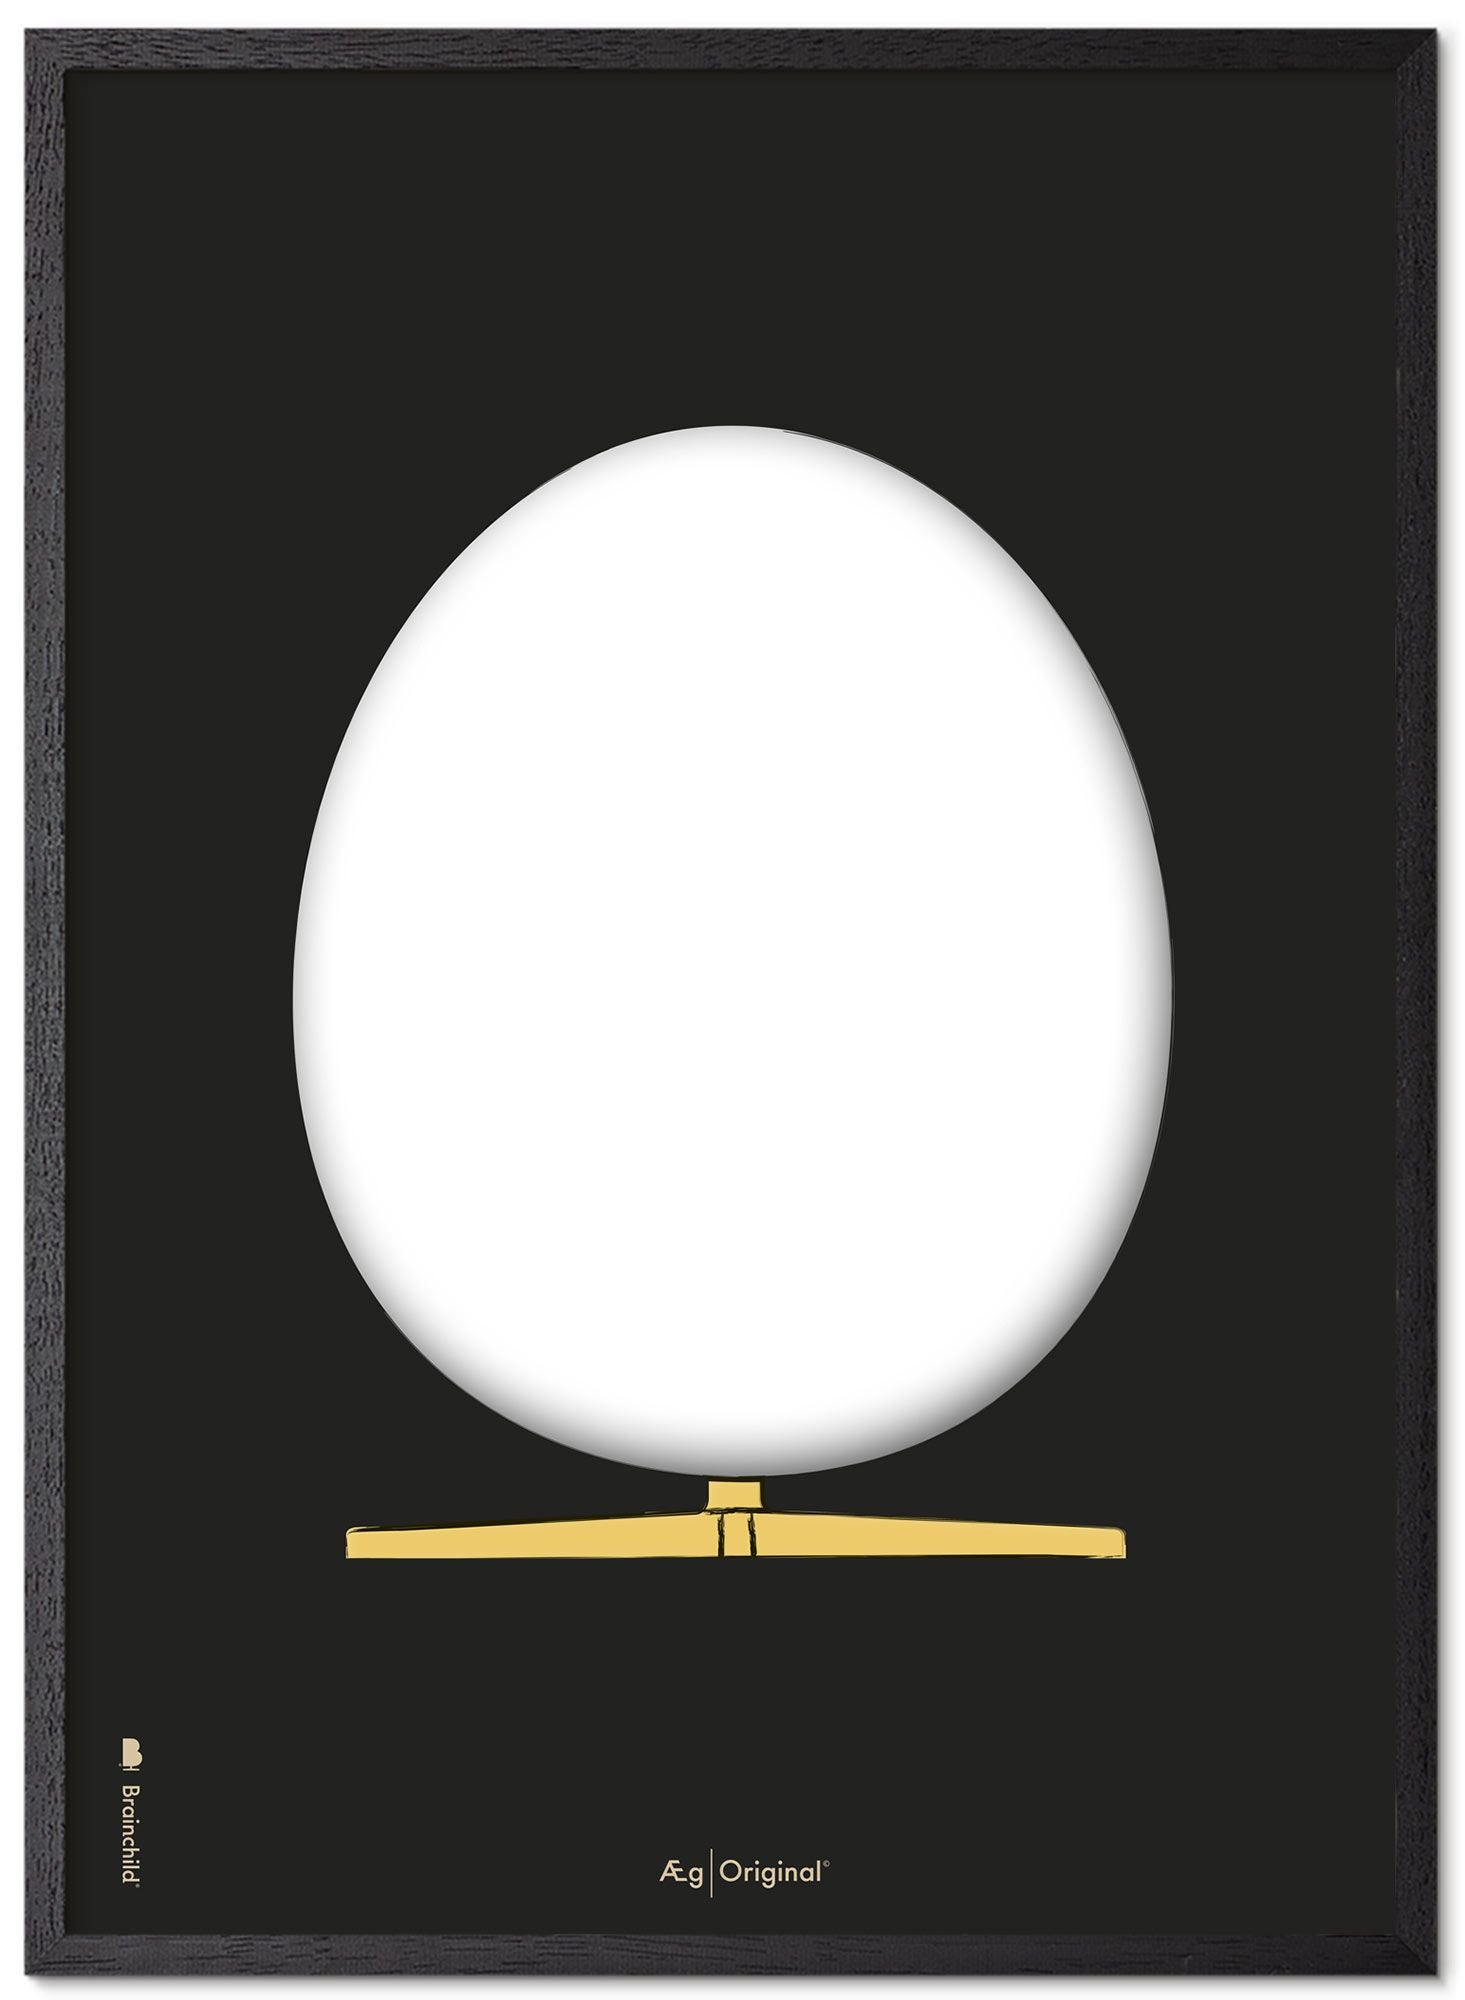 Prepare el marco de póster de boceto de diseño de huevo hecho de madera lacada negra de 30x40 cm, fondo negro